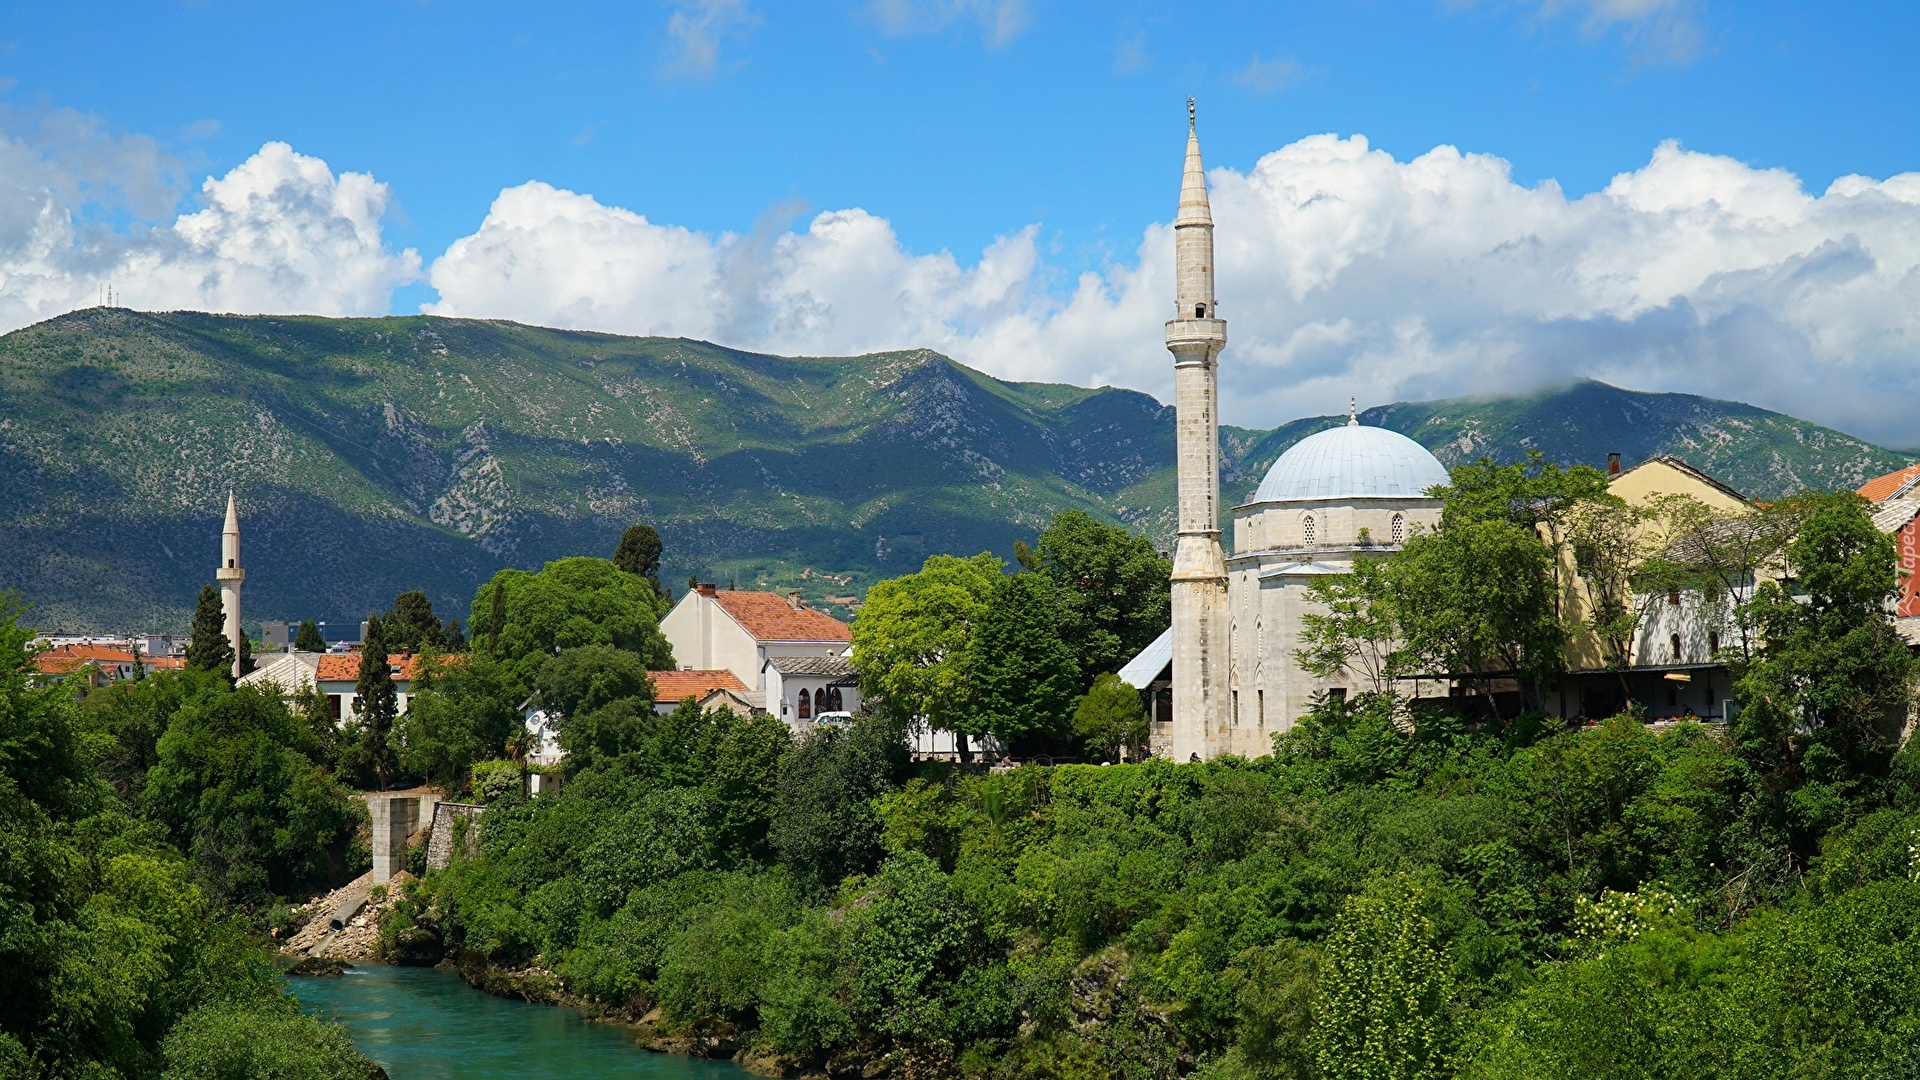 Bośnia i Hercegowina, Mostar, Meczet Koski Mehmed Pasha, Rzeka Neretva, Drzewa, Góry